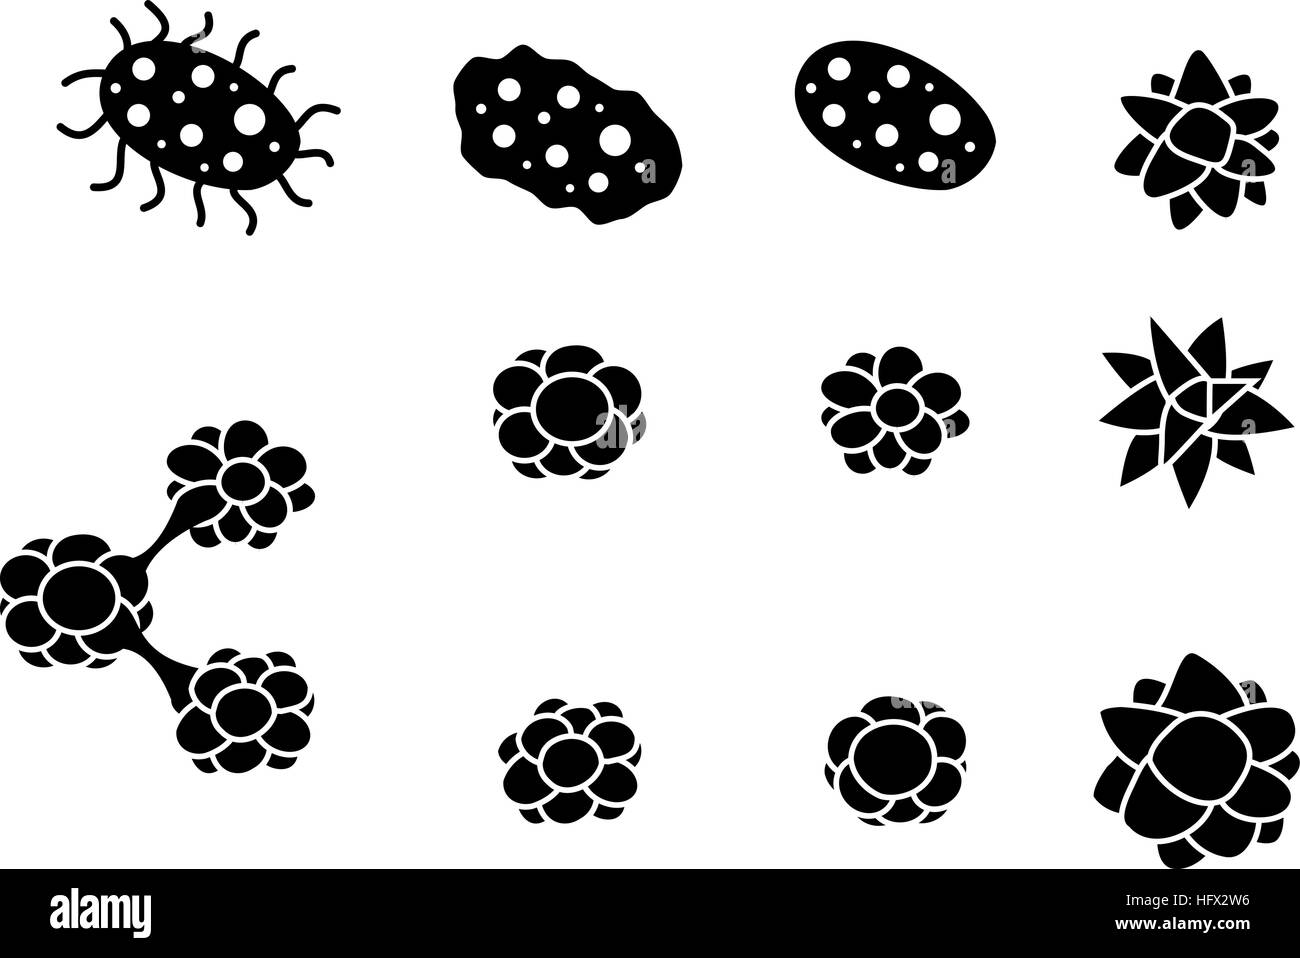 Eine Gruppe von Viren und Krebs Zelle Symbole in der Silhouette, Vektor Stock Vektor